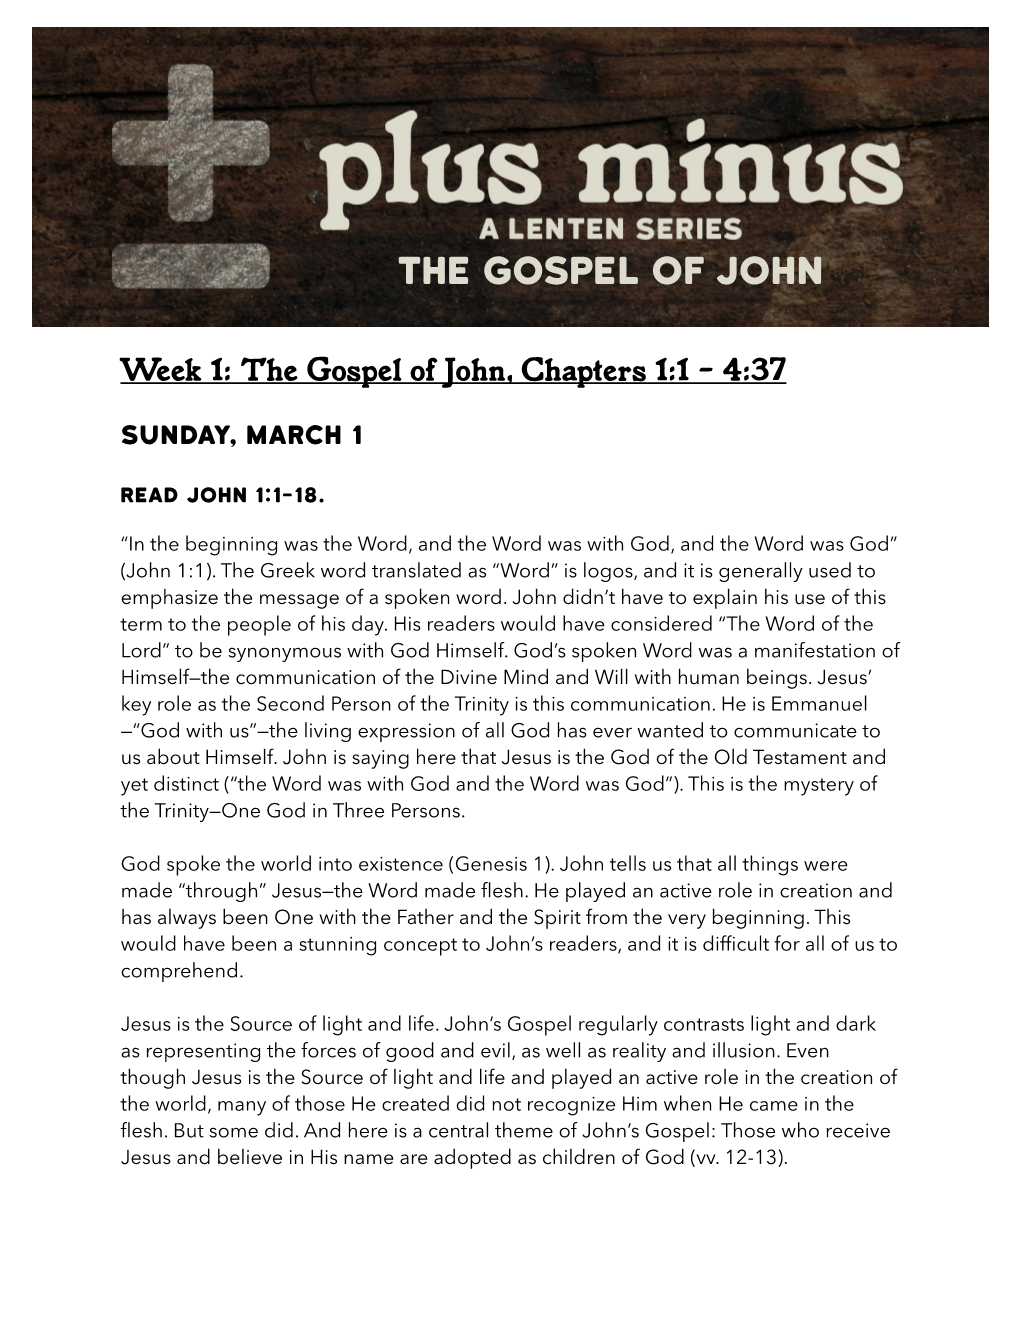 Gospel of John Devotional